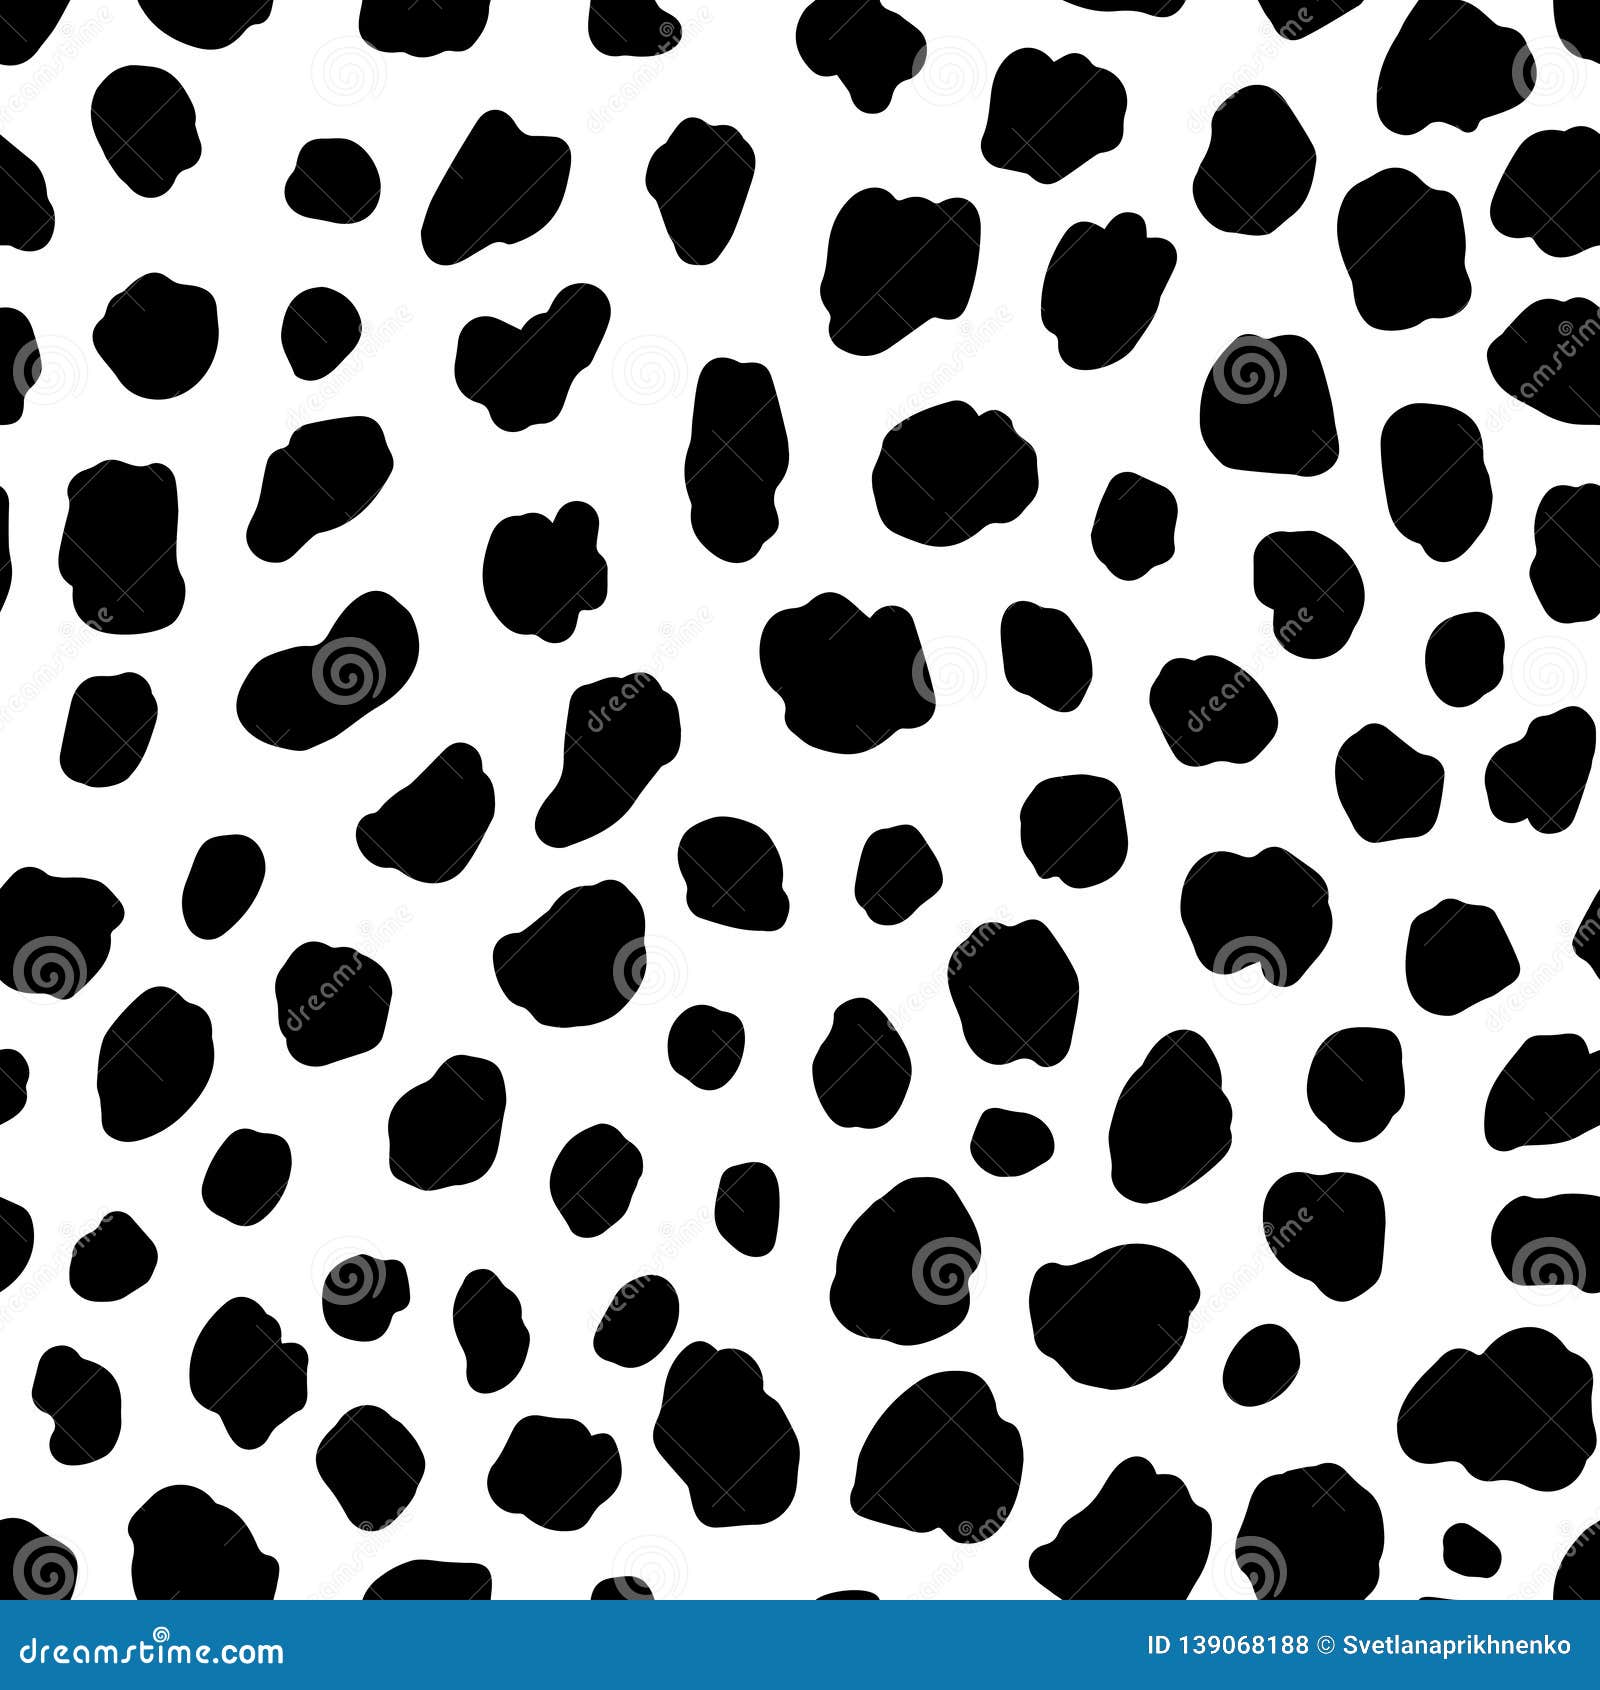 dalmatian dog seamless pattern